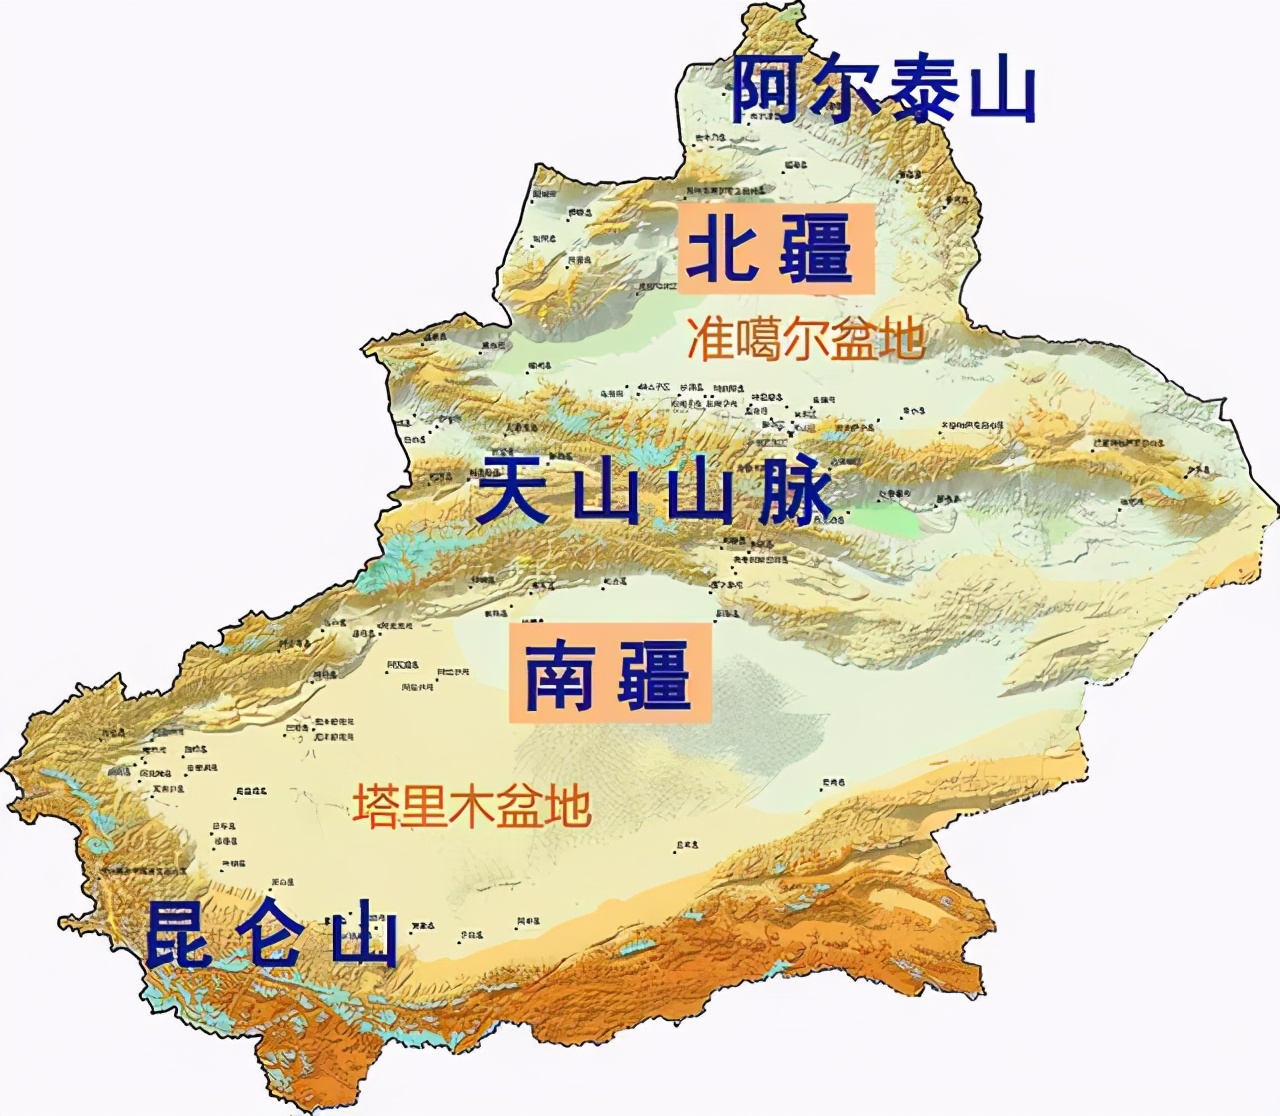 新疆北部为阿尔泰山,南部为昆仑山脉,中部为天山山脉